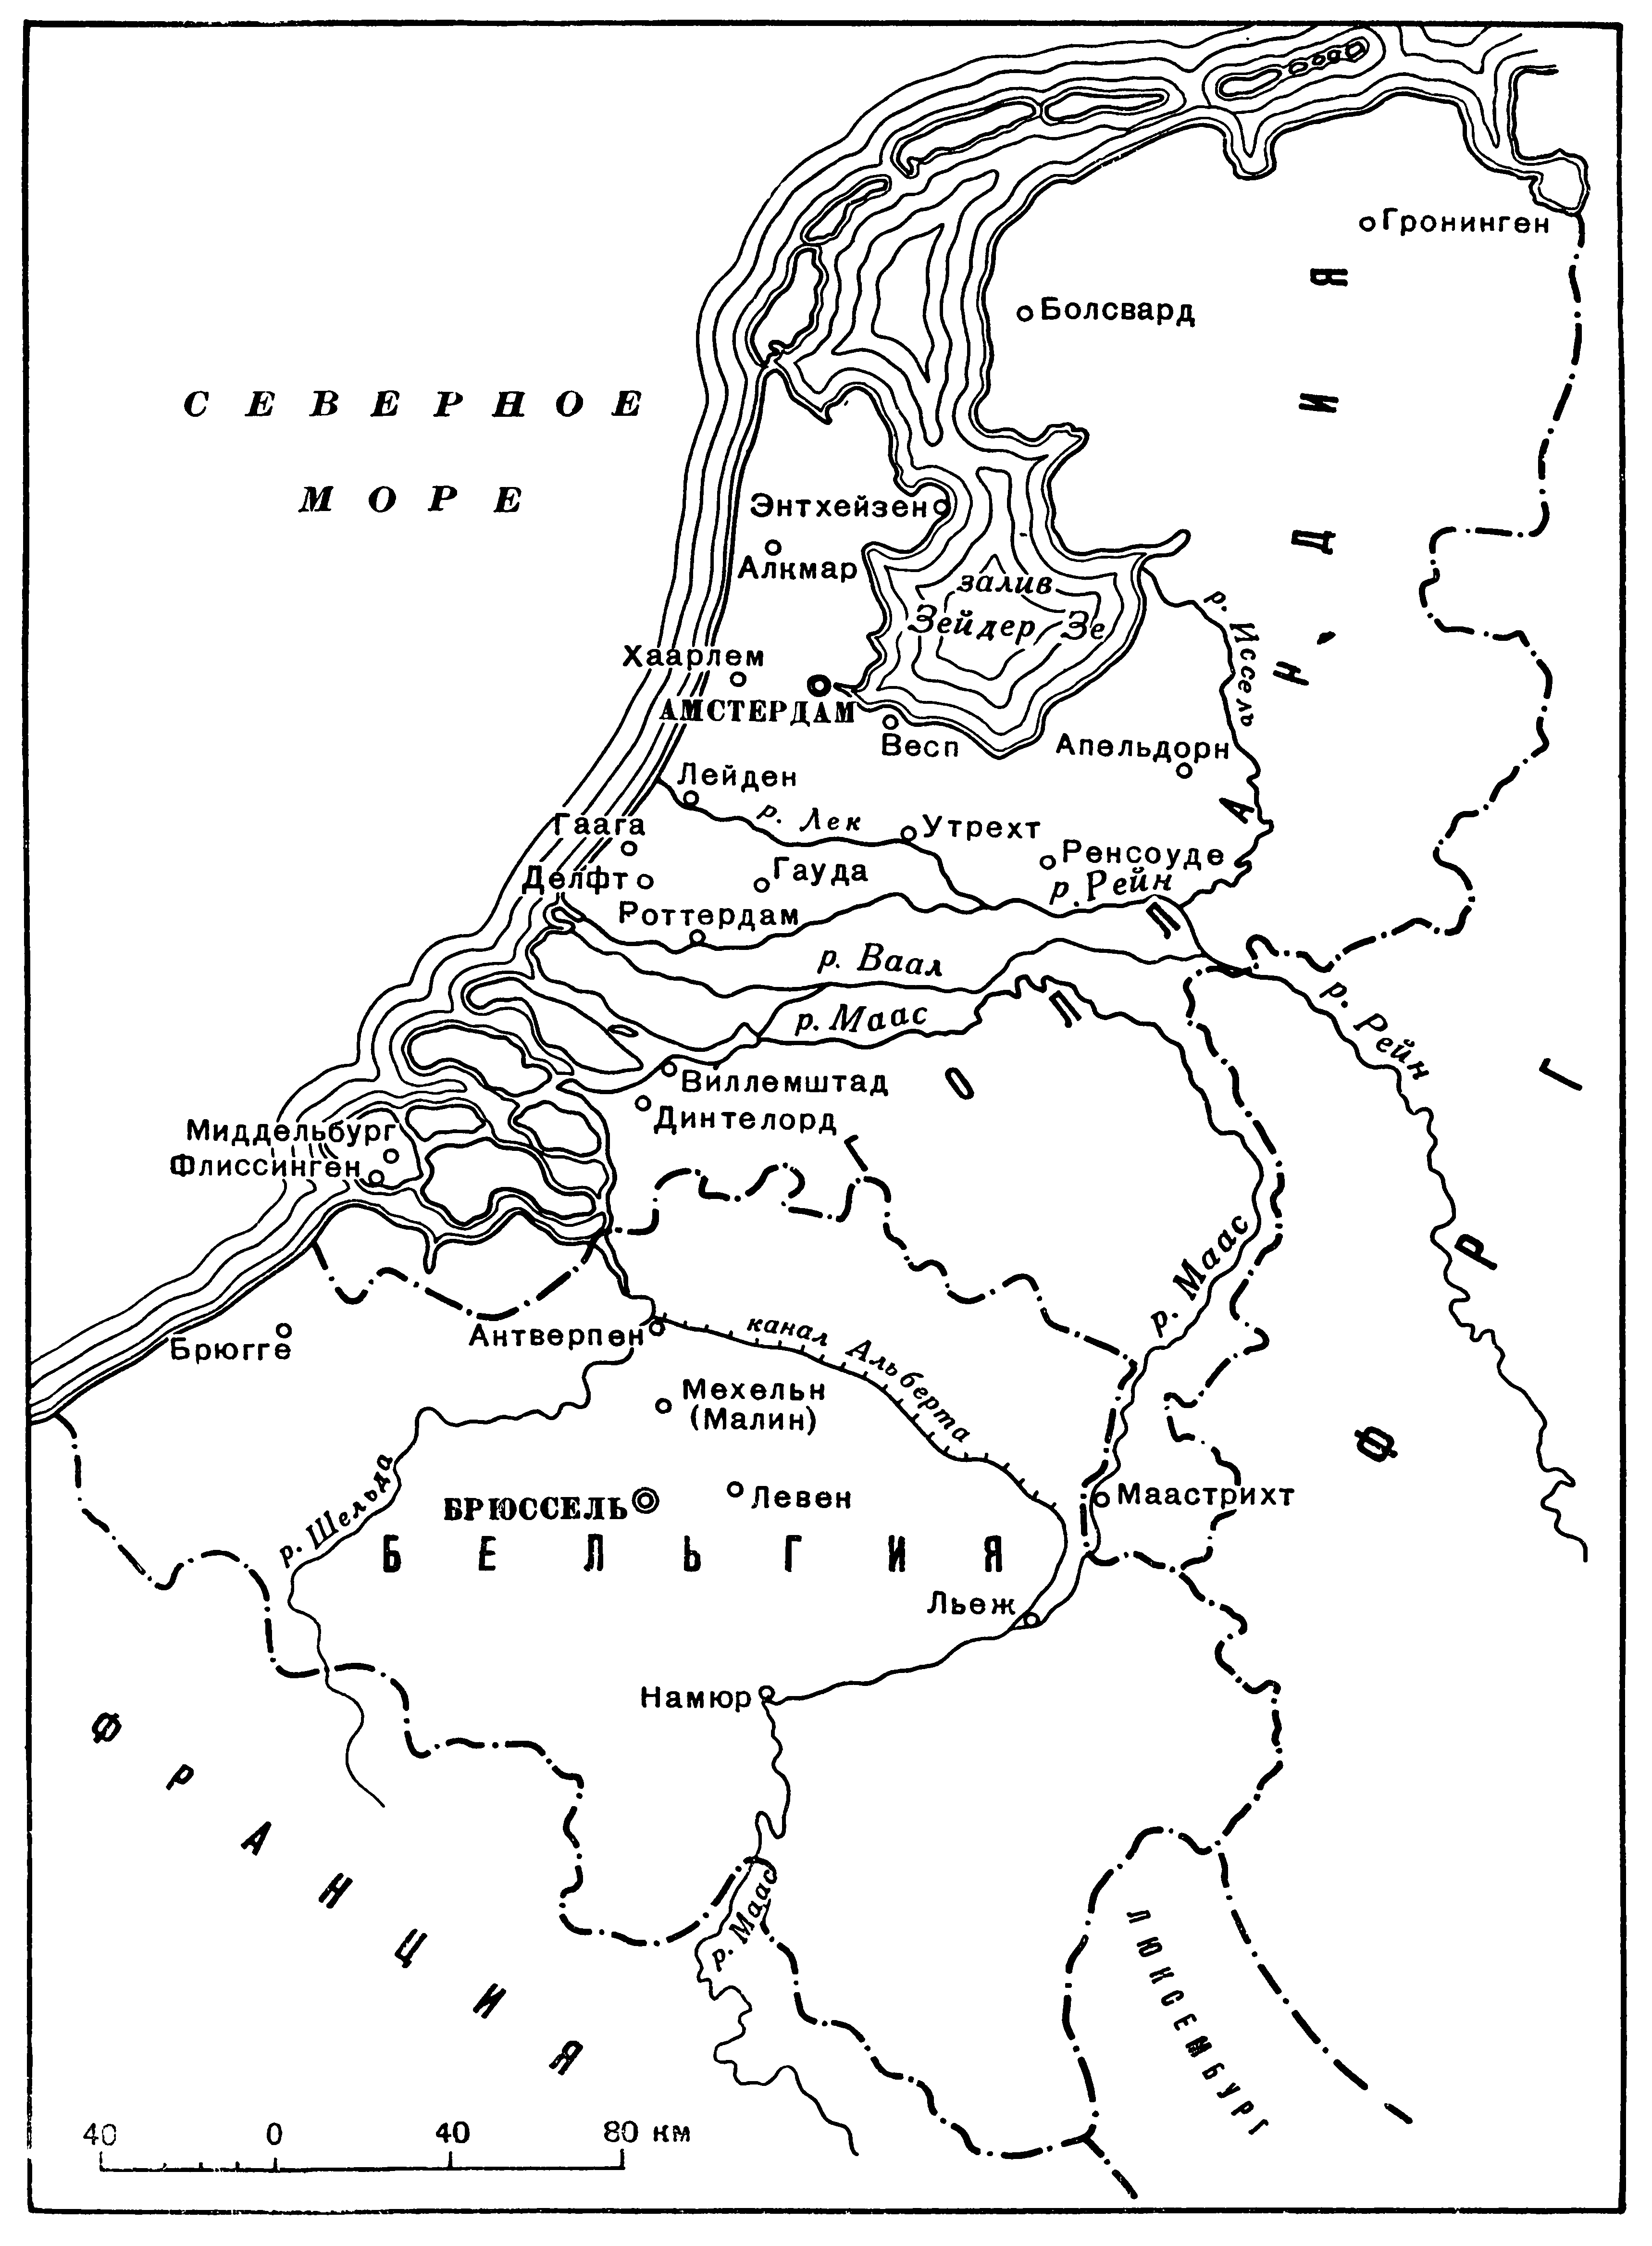 Схематическая карта Бельгии и Голландии XVIII в.